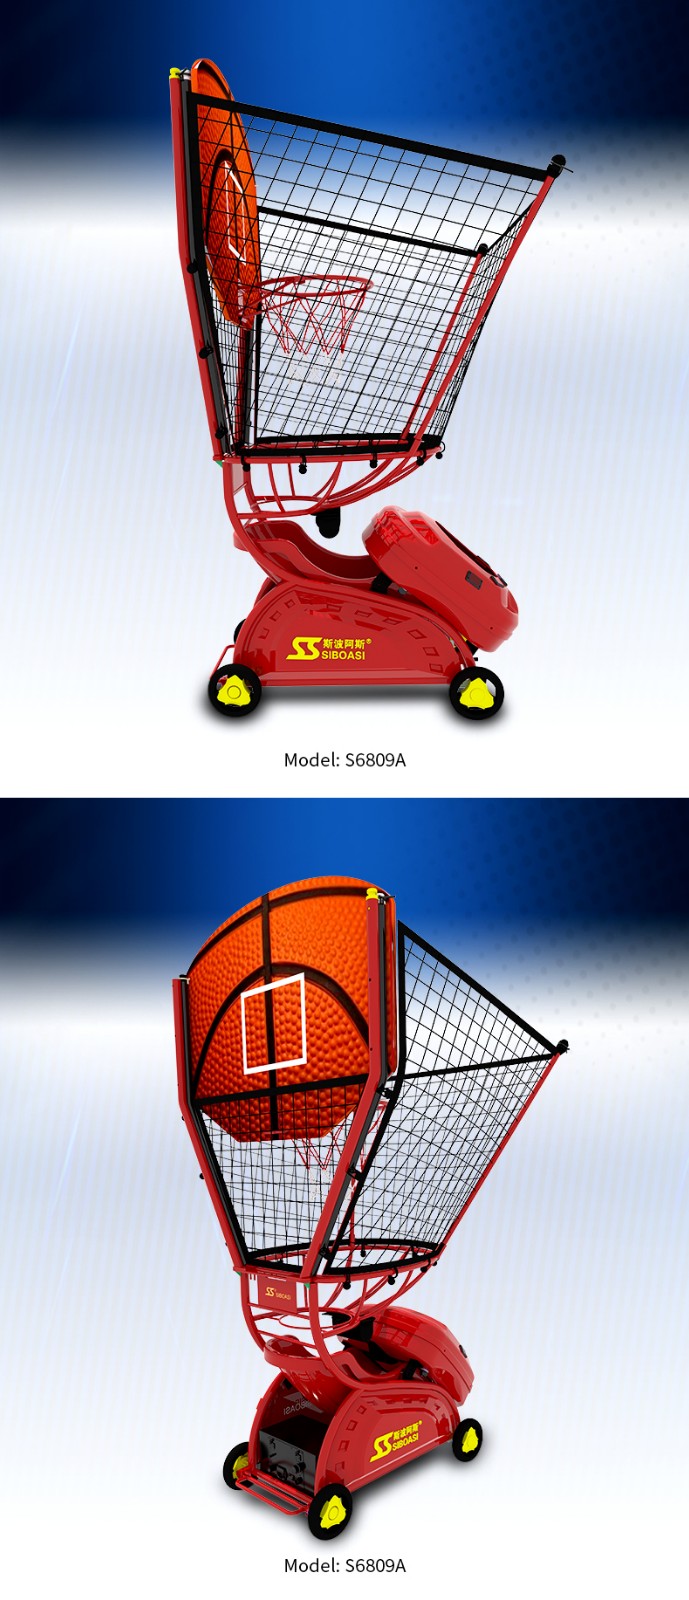 mașină de baschet pentru copii